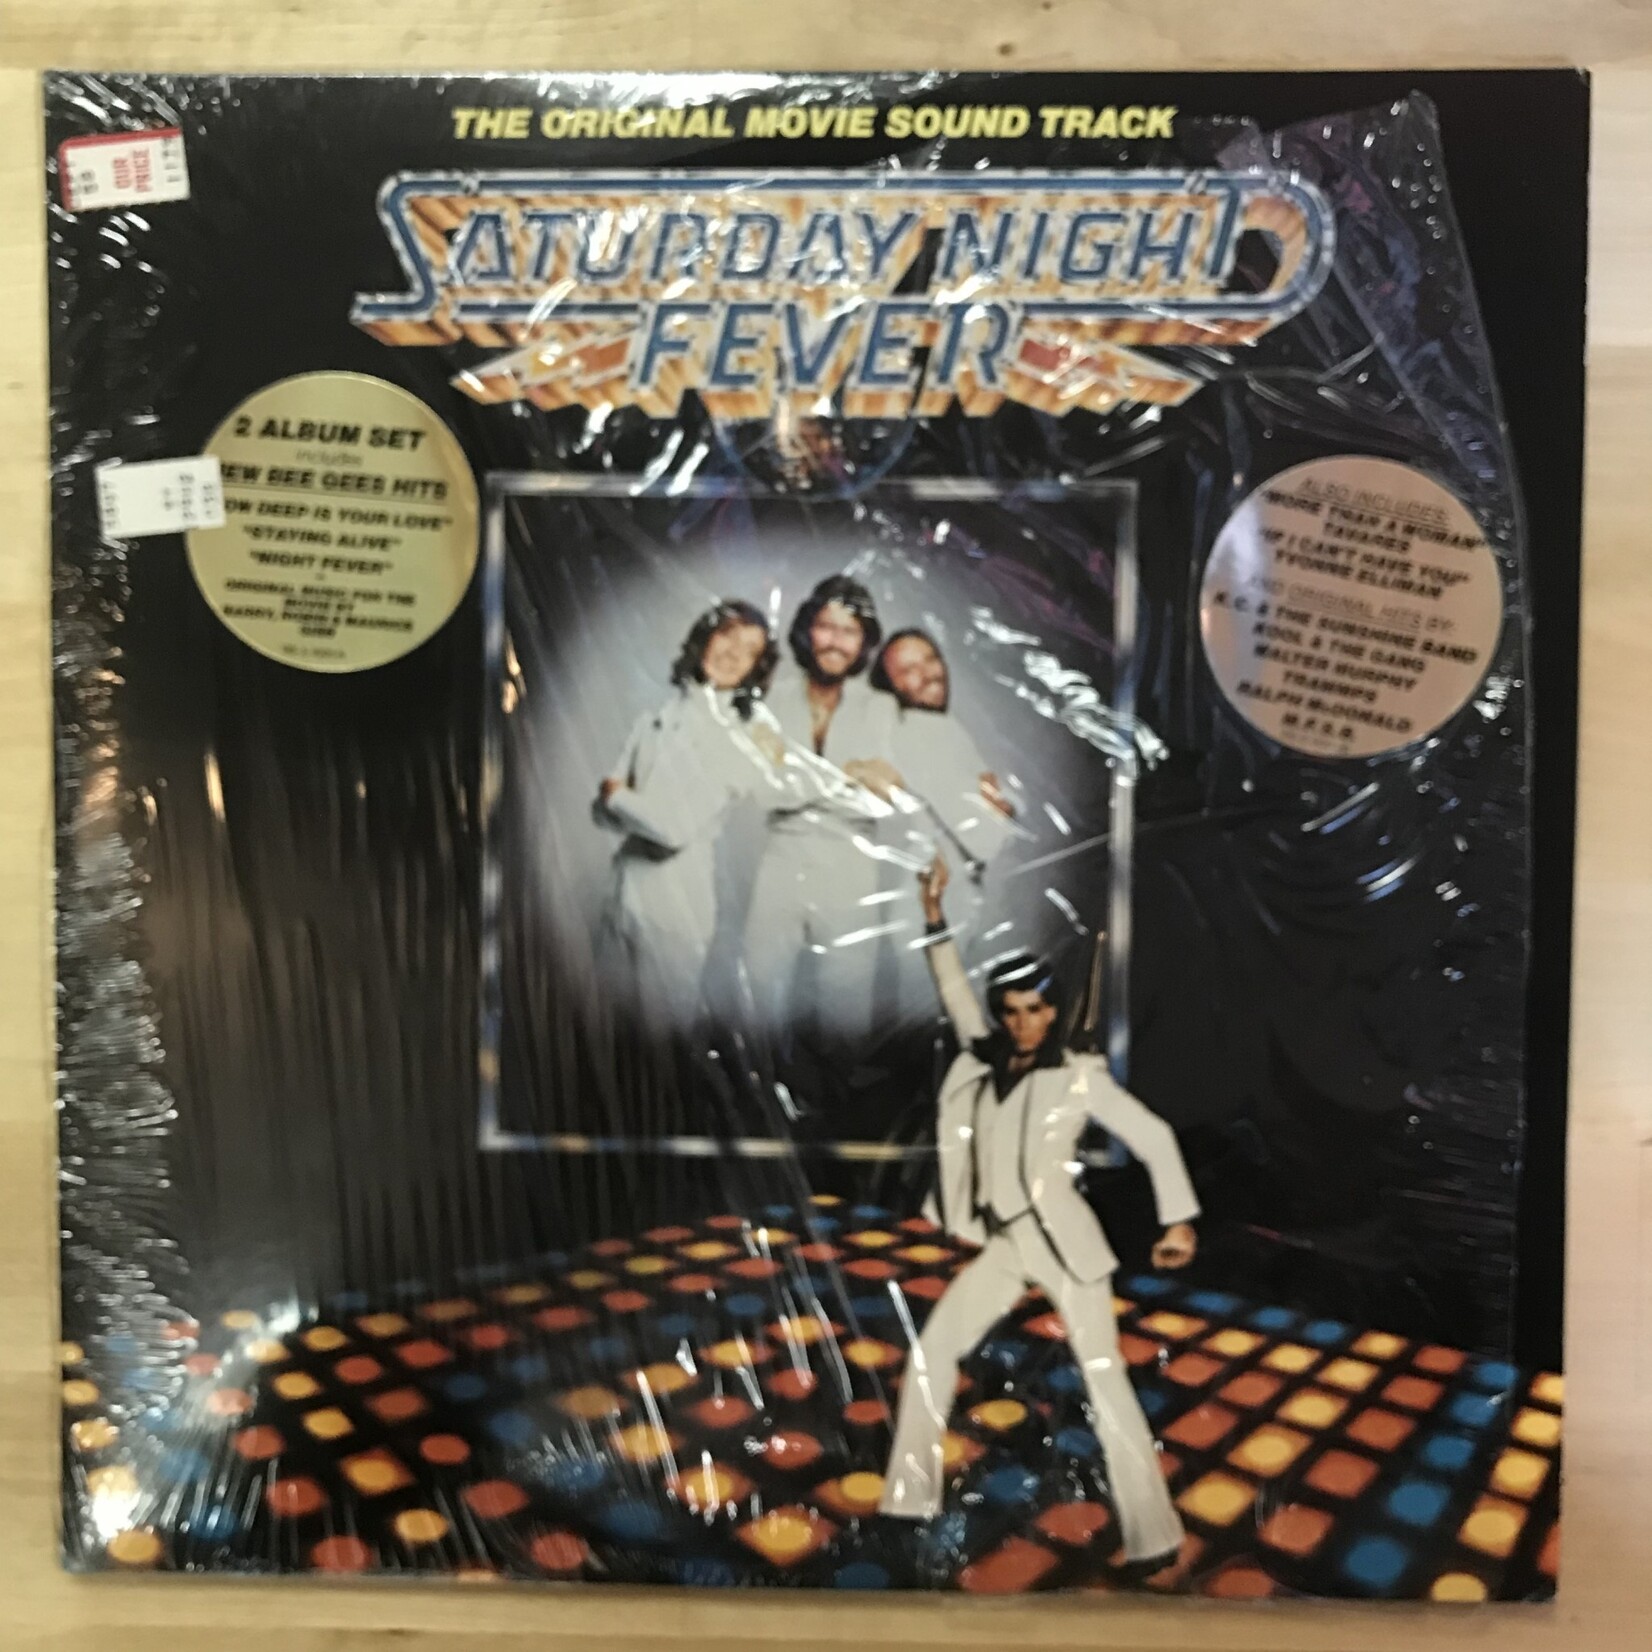 Saturday Night Fever - Original Movie Sound Track (Reissue) - RS 2 4001 - Vinyl LP (USED)